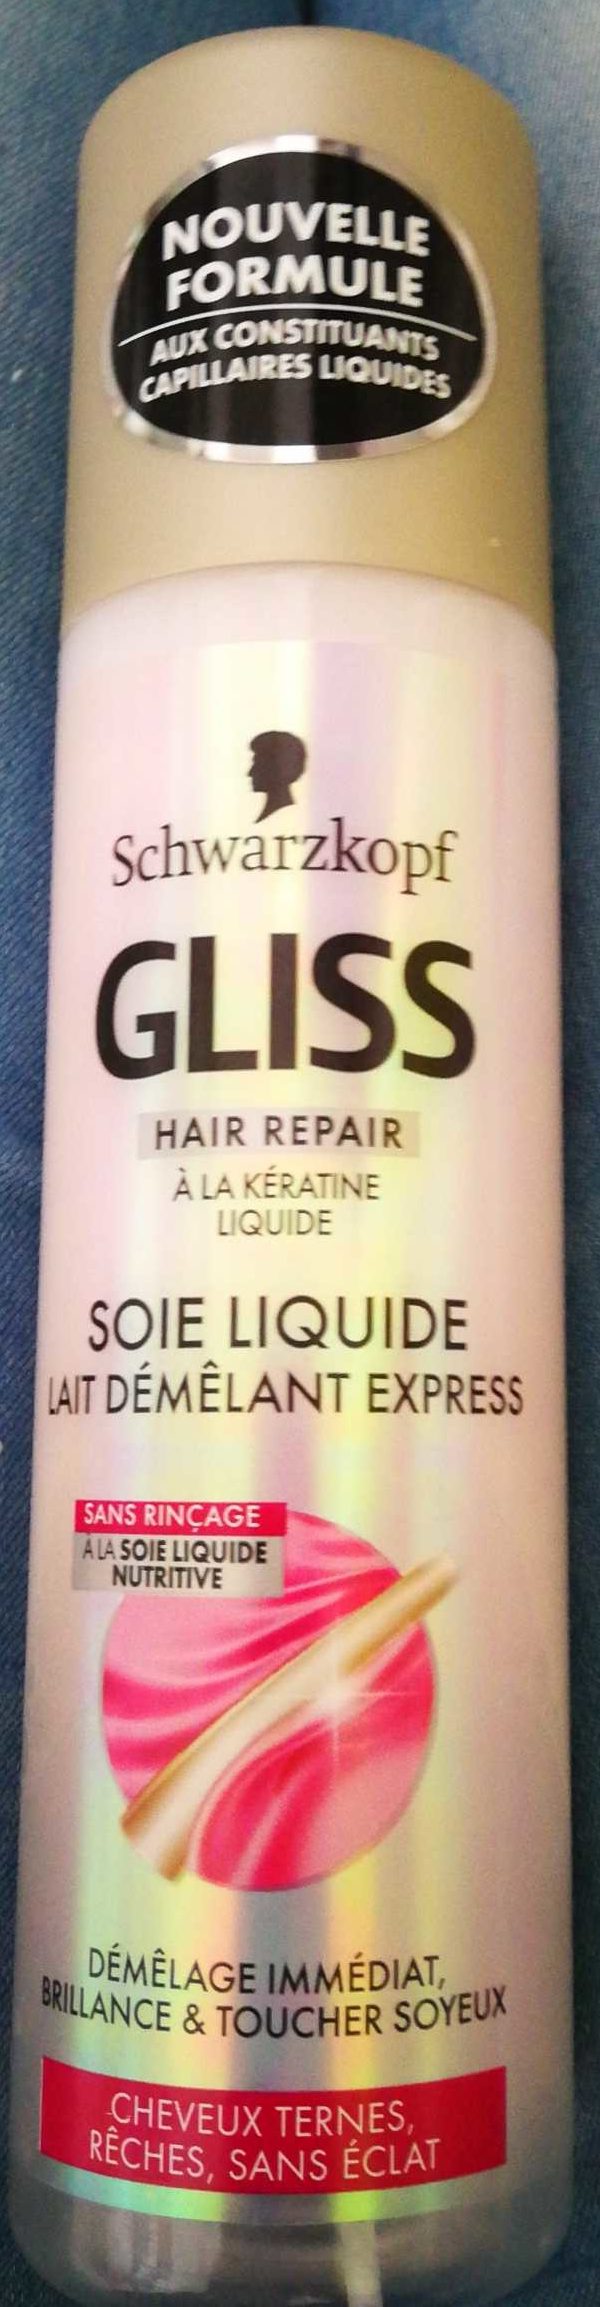 Gliss Soie liquide - Продукт - fr